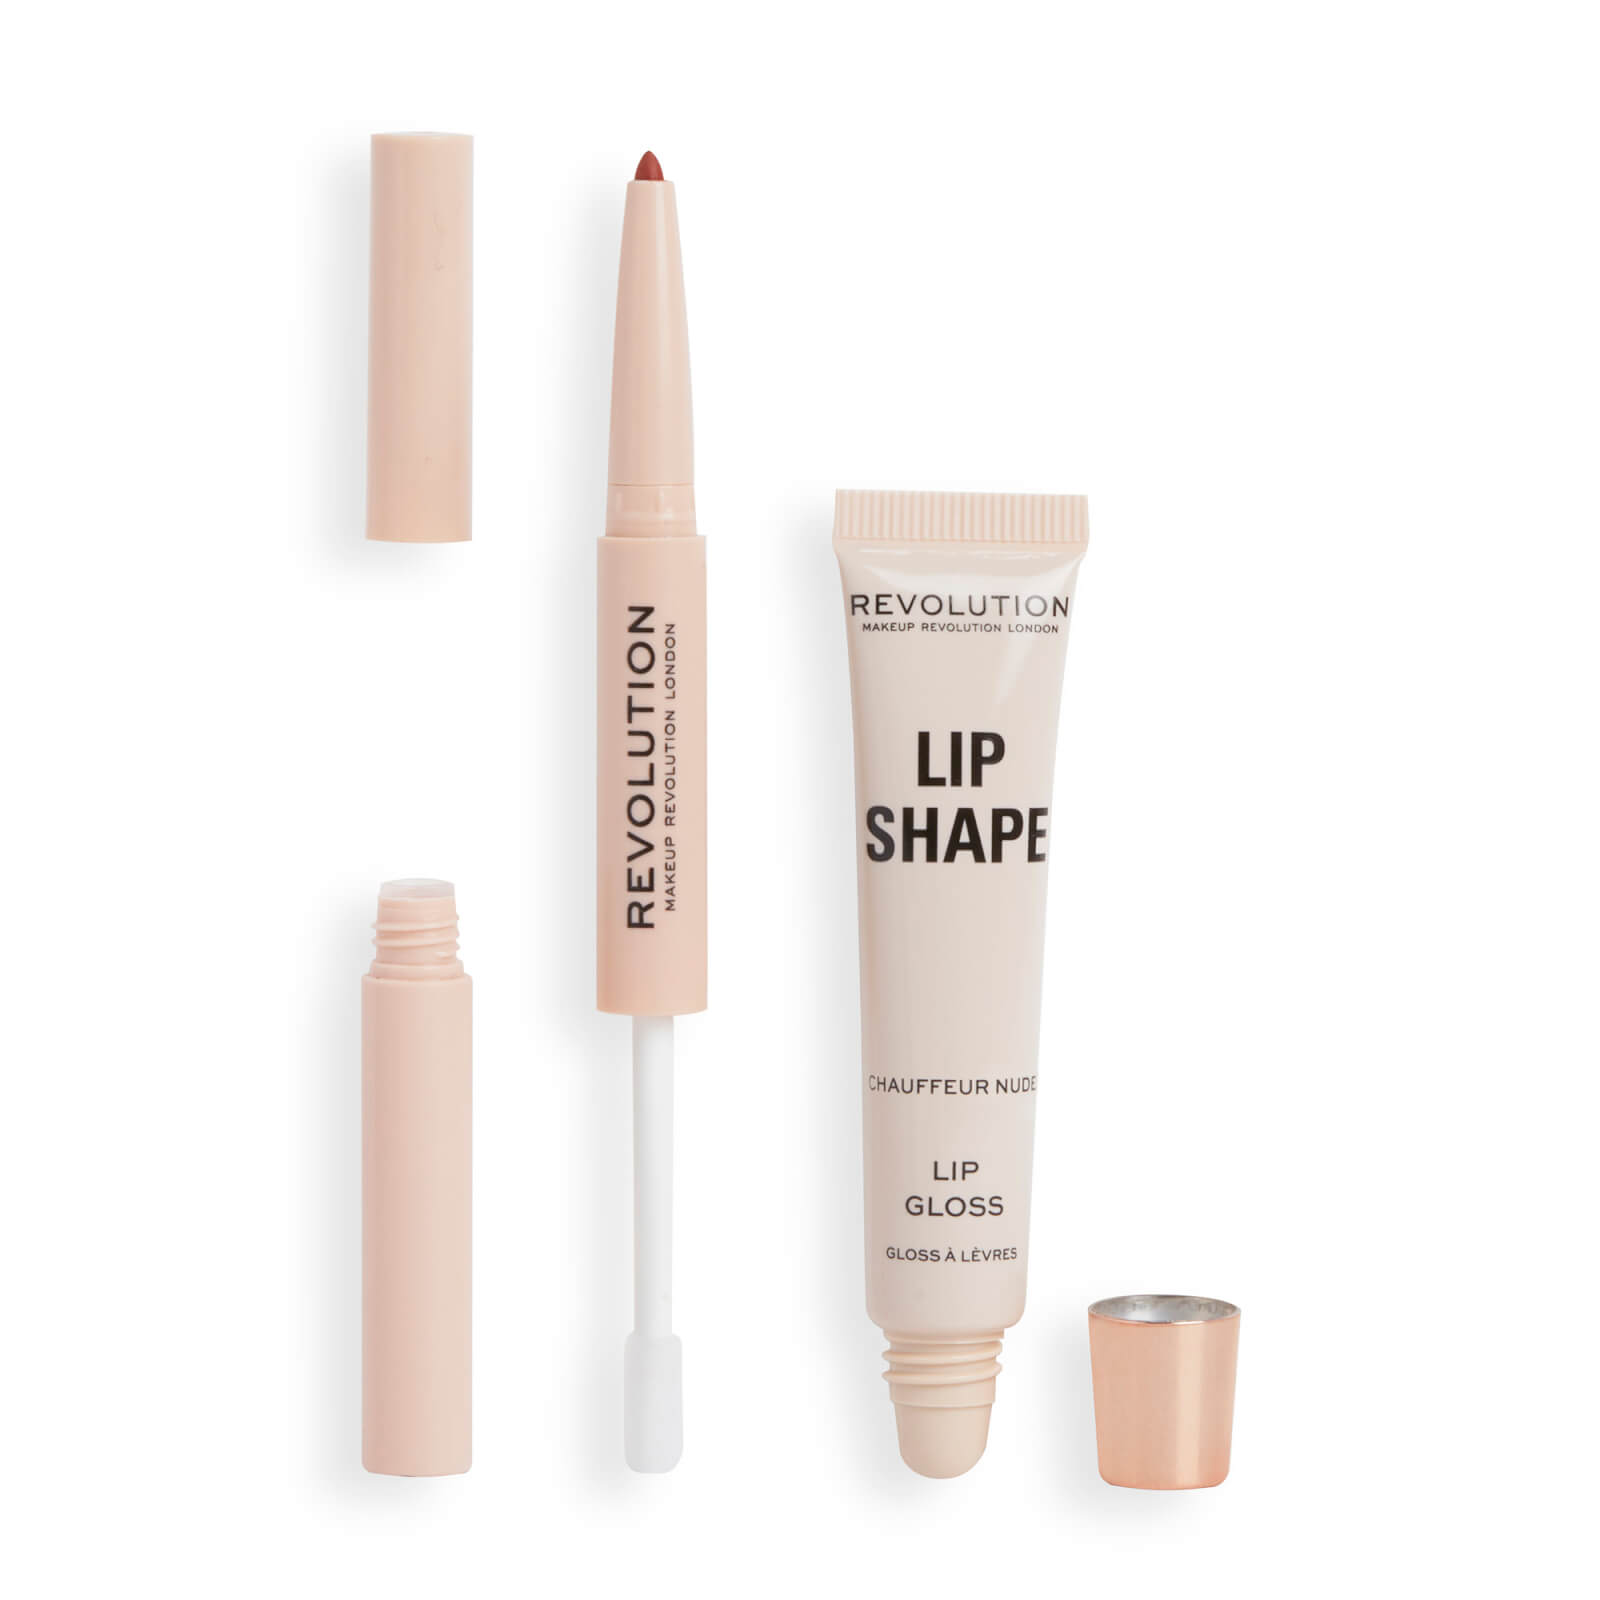 Revolution Beauty Lip Shape Kit - Chauffeur Nude